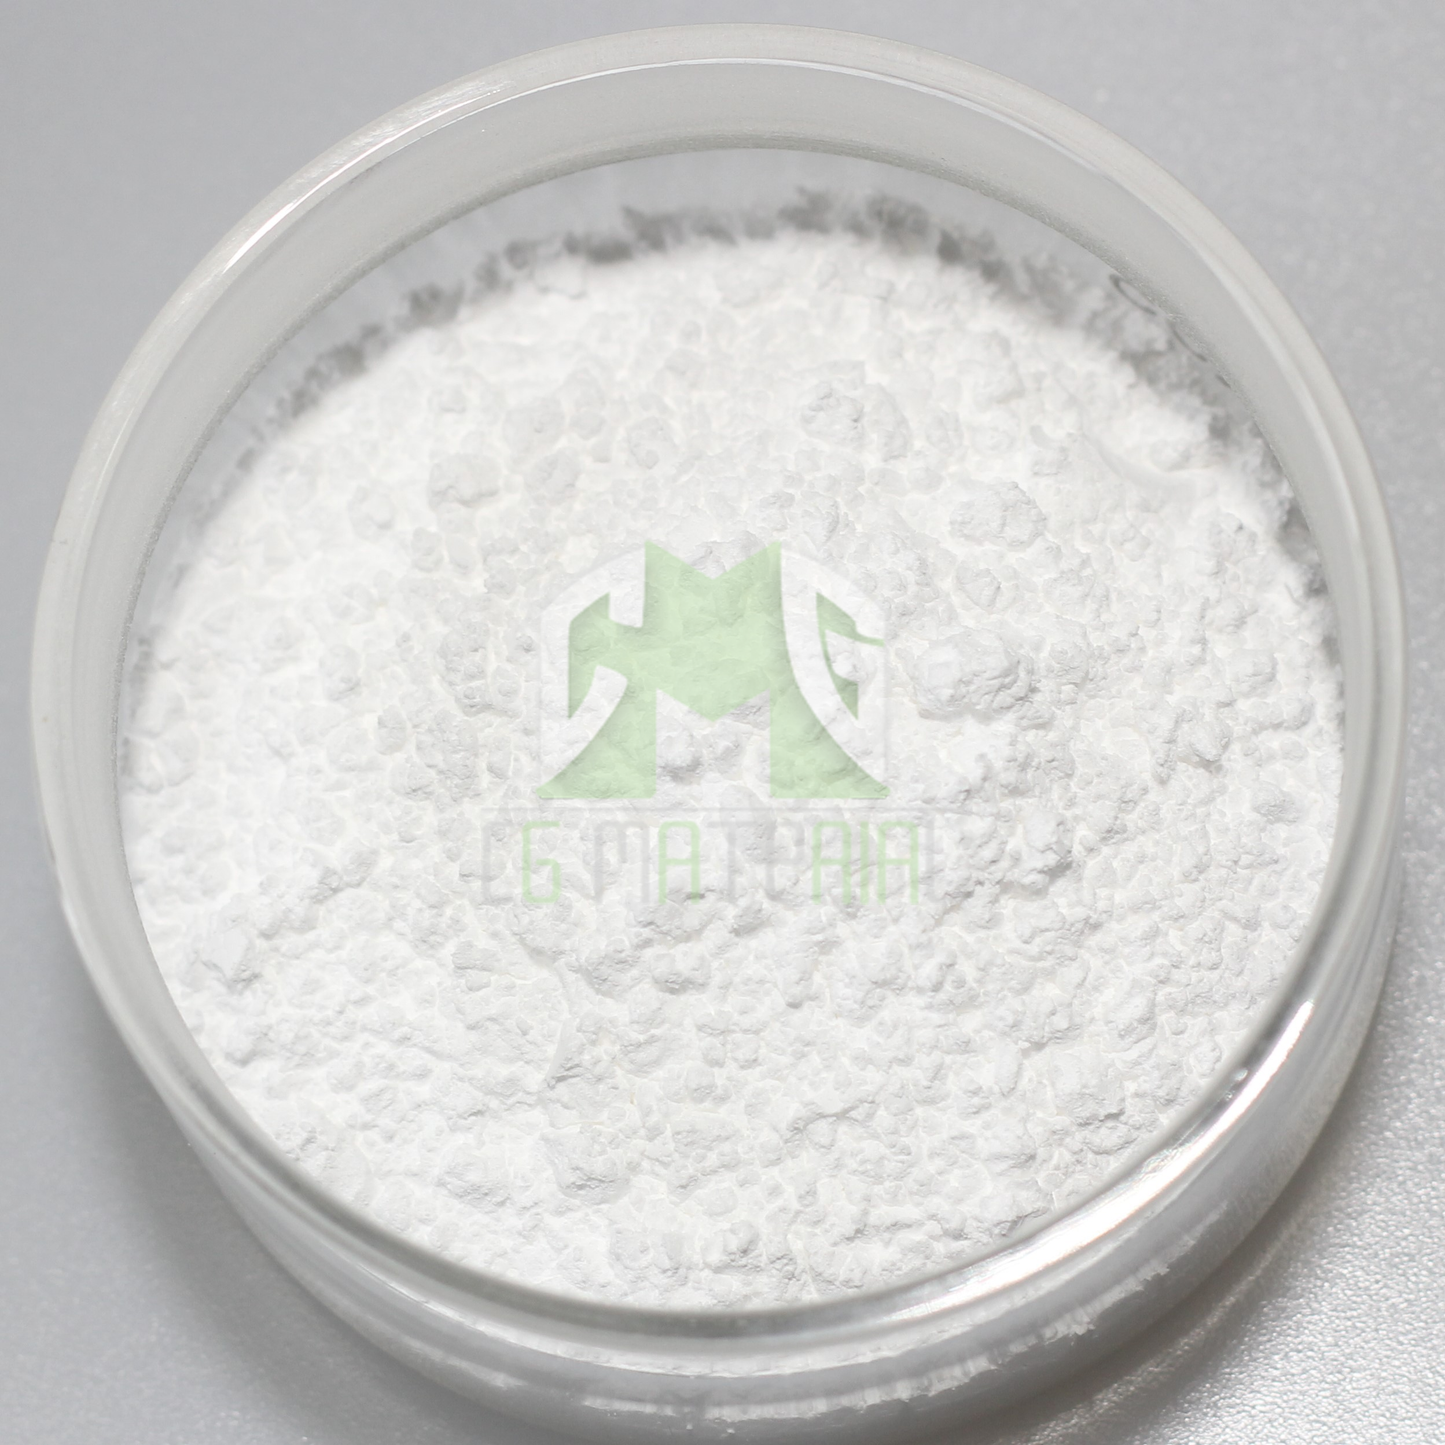 Terbium Fluoride Powder (TbF3), CAS NO 13708-63-9